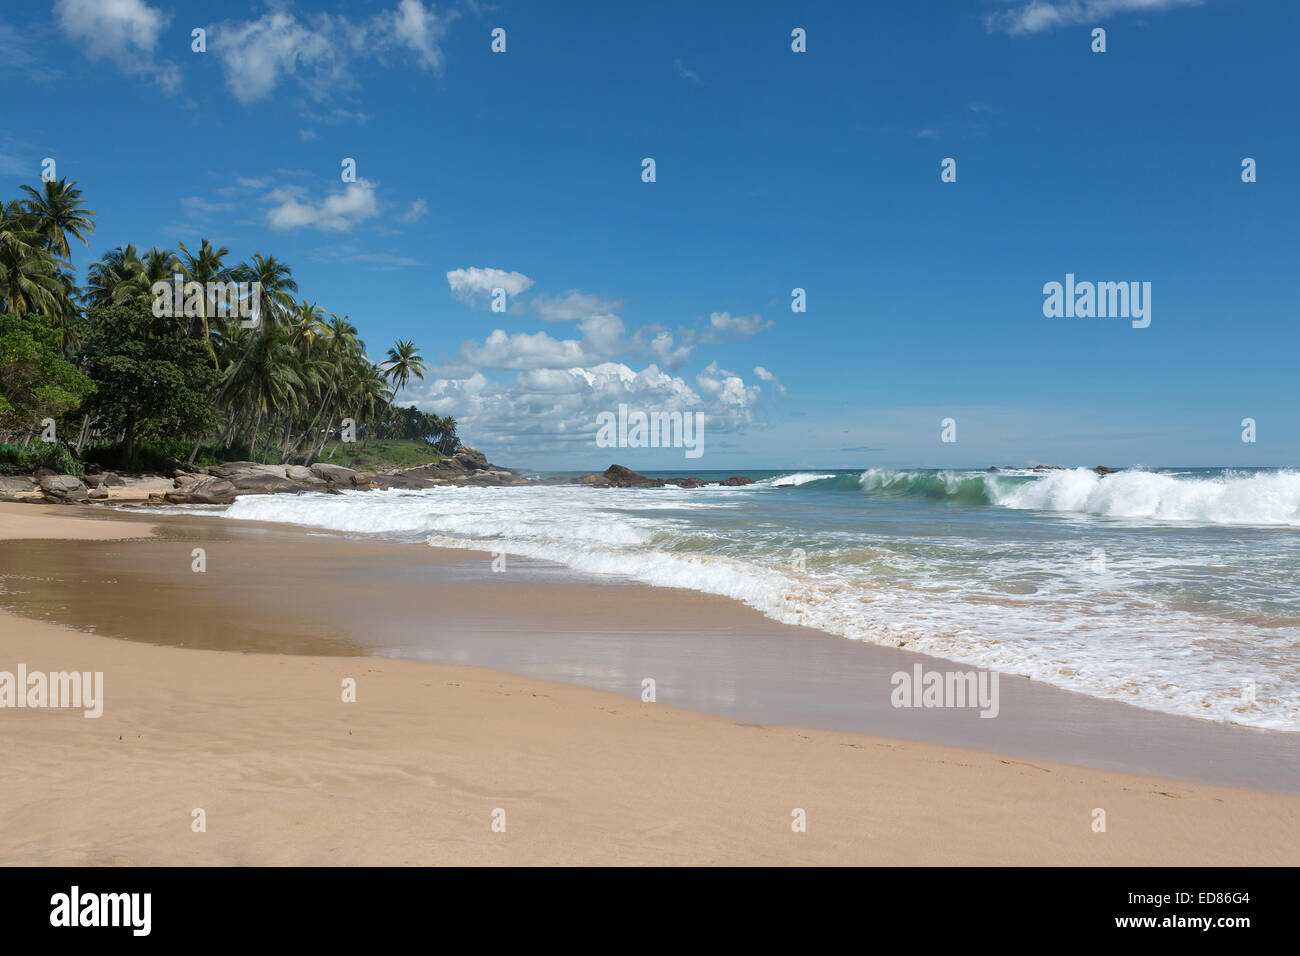 Spiaggia tropicale. Spiaggia di sabbia, palme da cocco e onde verdi con seafoam. Sud della provincia, Sri Lanka, in Asia. Foto Stock